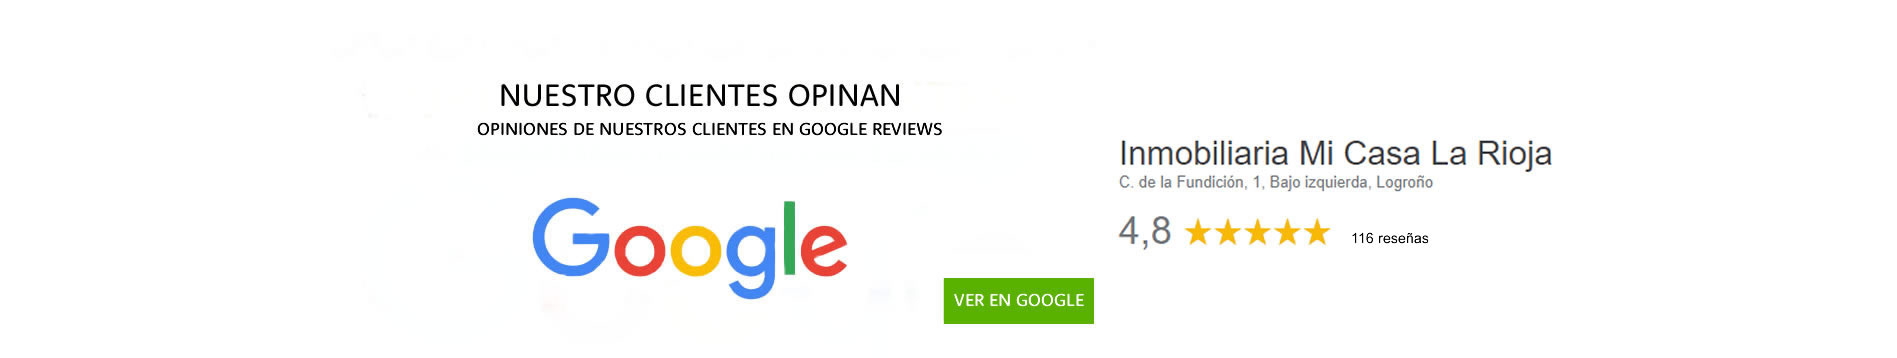 Opiniones de clientes sobre iMiCasa en google